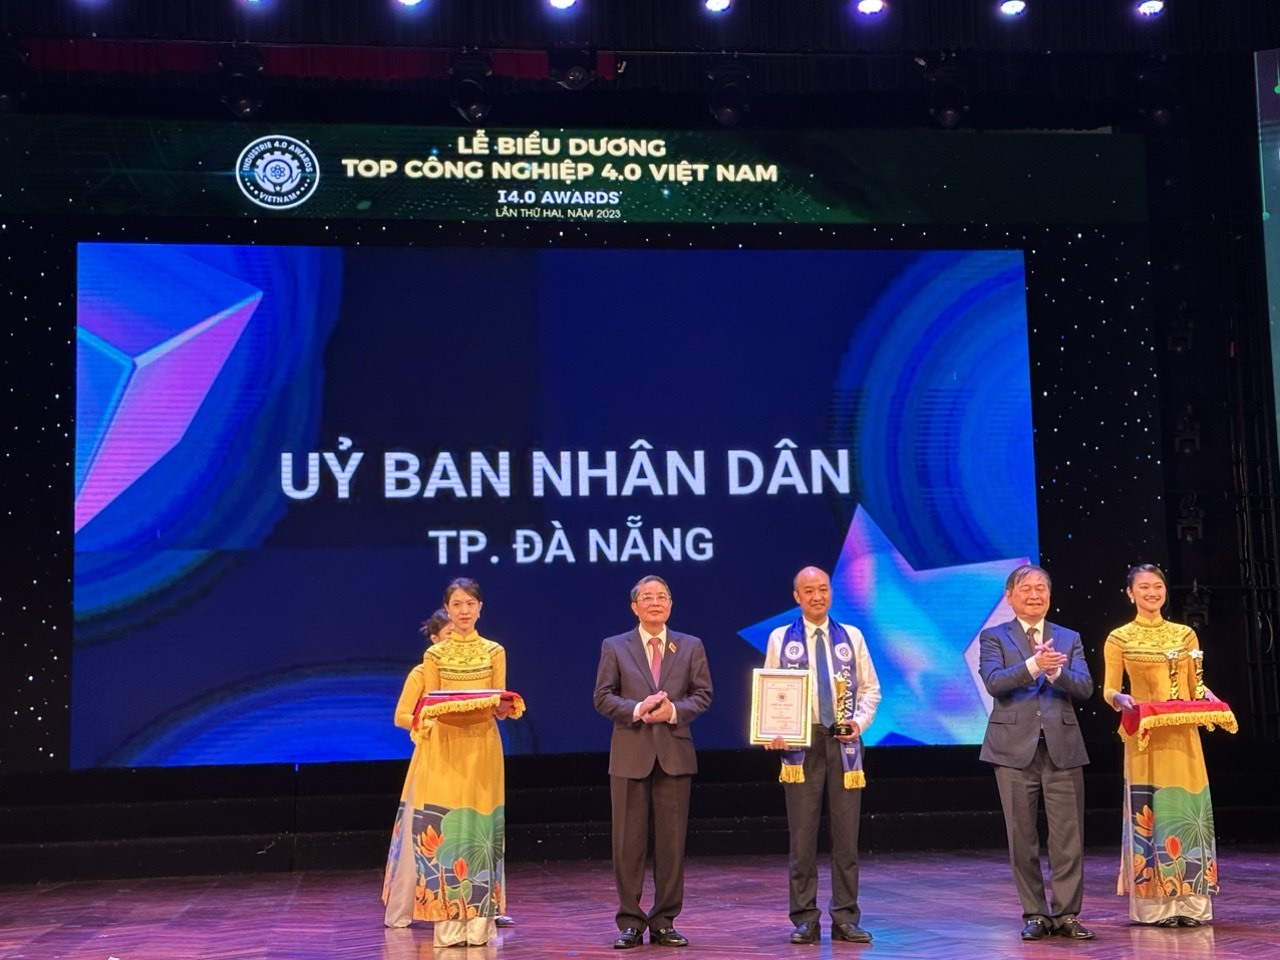 UBND TP Đà Nẵng được trao giải thưởng tại hạng mục “Top tổ chức, địa phương tiêu biểu chủ động thực hiện cách mạng công nghiệp 4.0 và chuyển đổi số“.